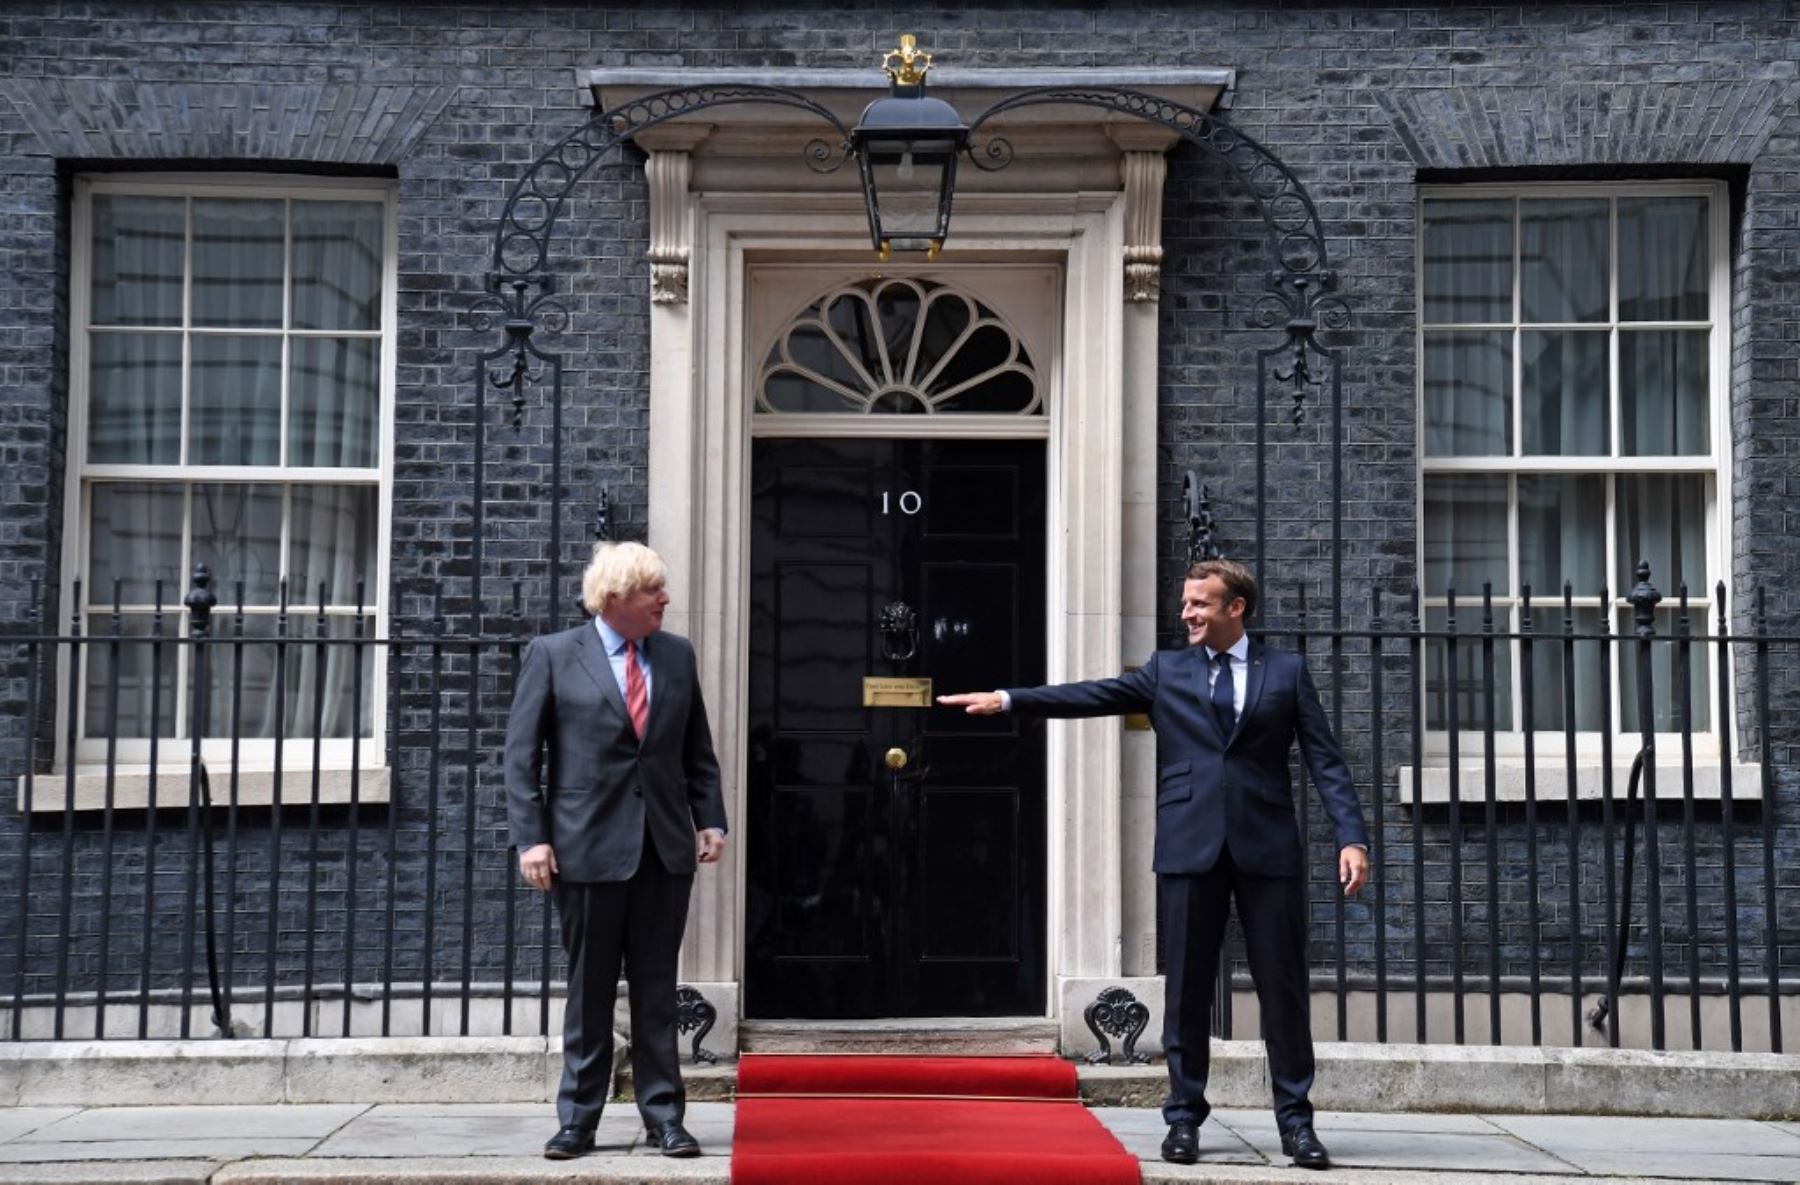 El presidente francés Emmanuel Macron hace gestos sobre permanecer socialmente distante junto al primer ministro británico Boris Johnson en el centro de Londres durante una actividad. Foto: AFP